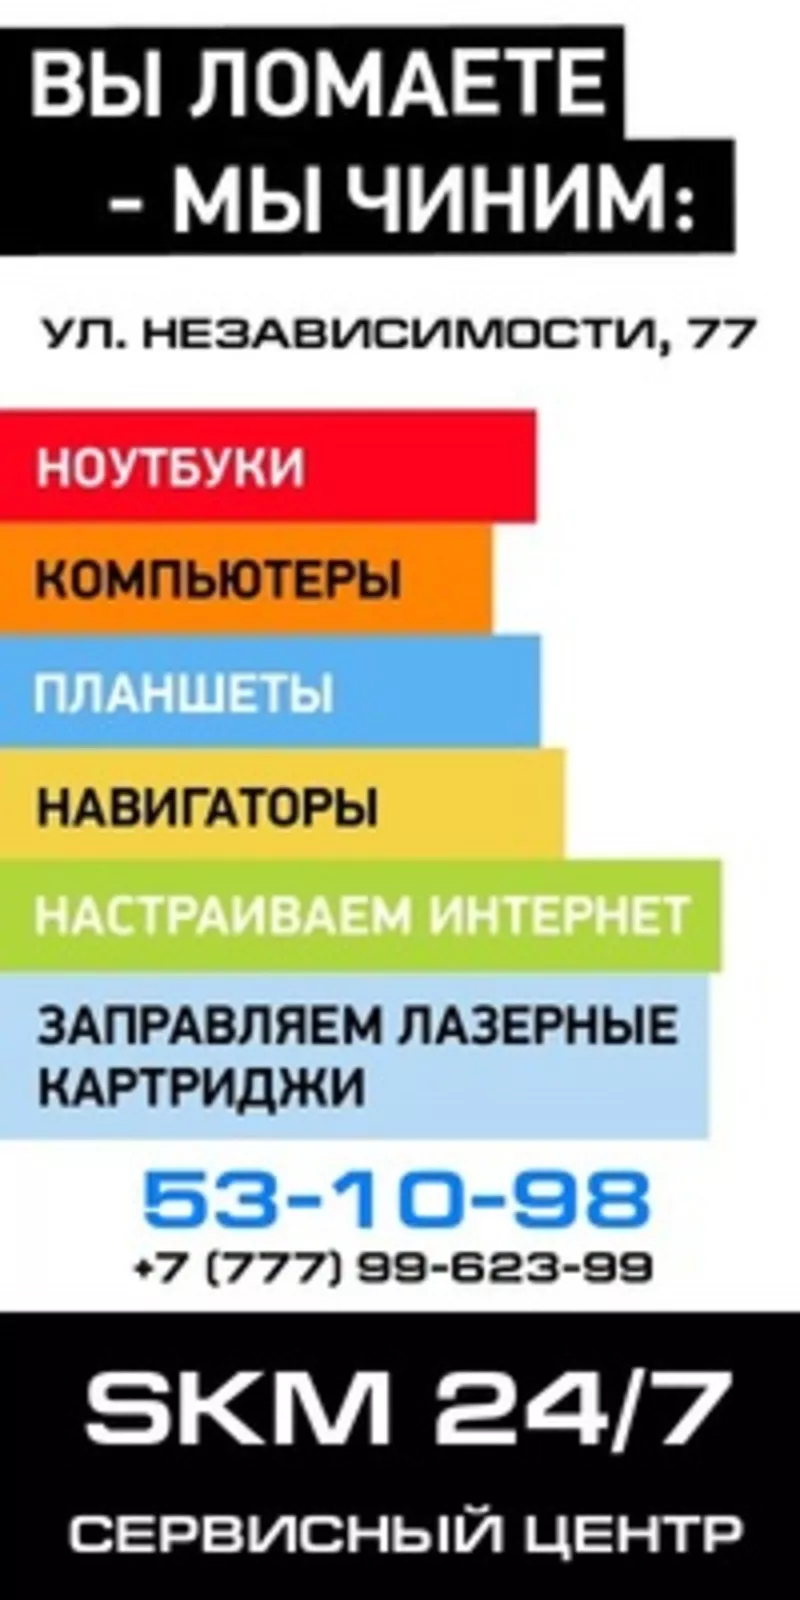 Усть-Каменогоpск востановить данные